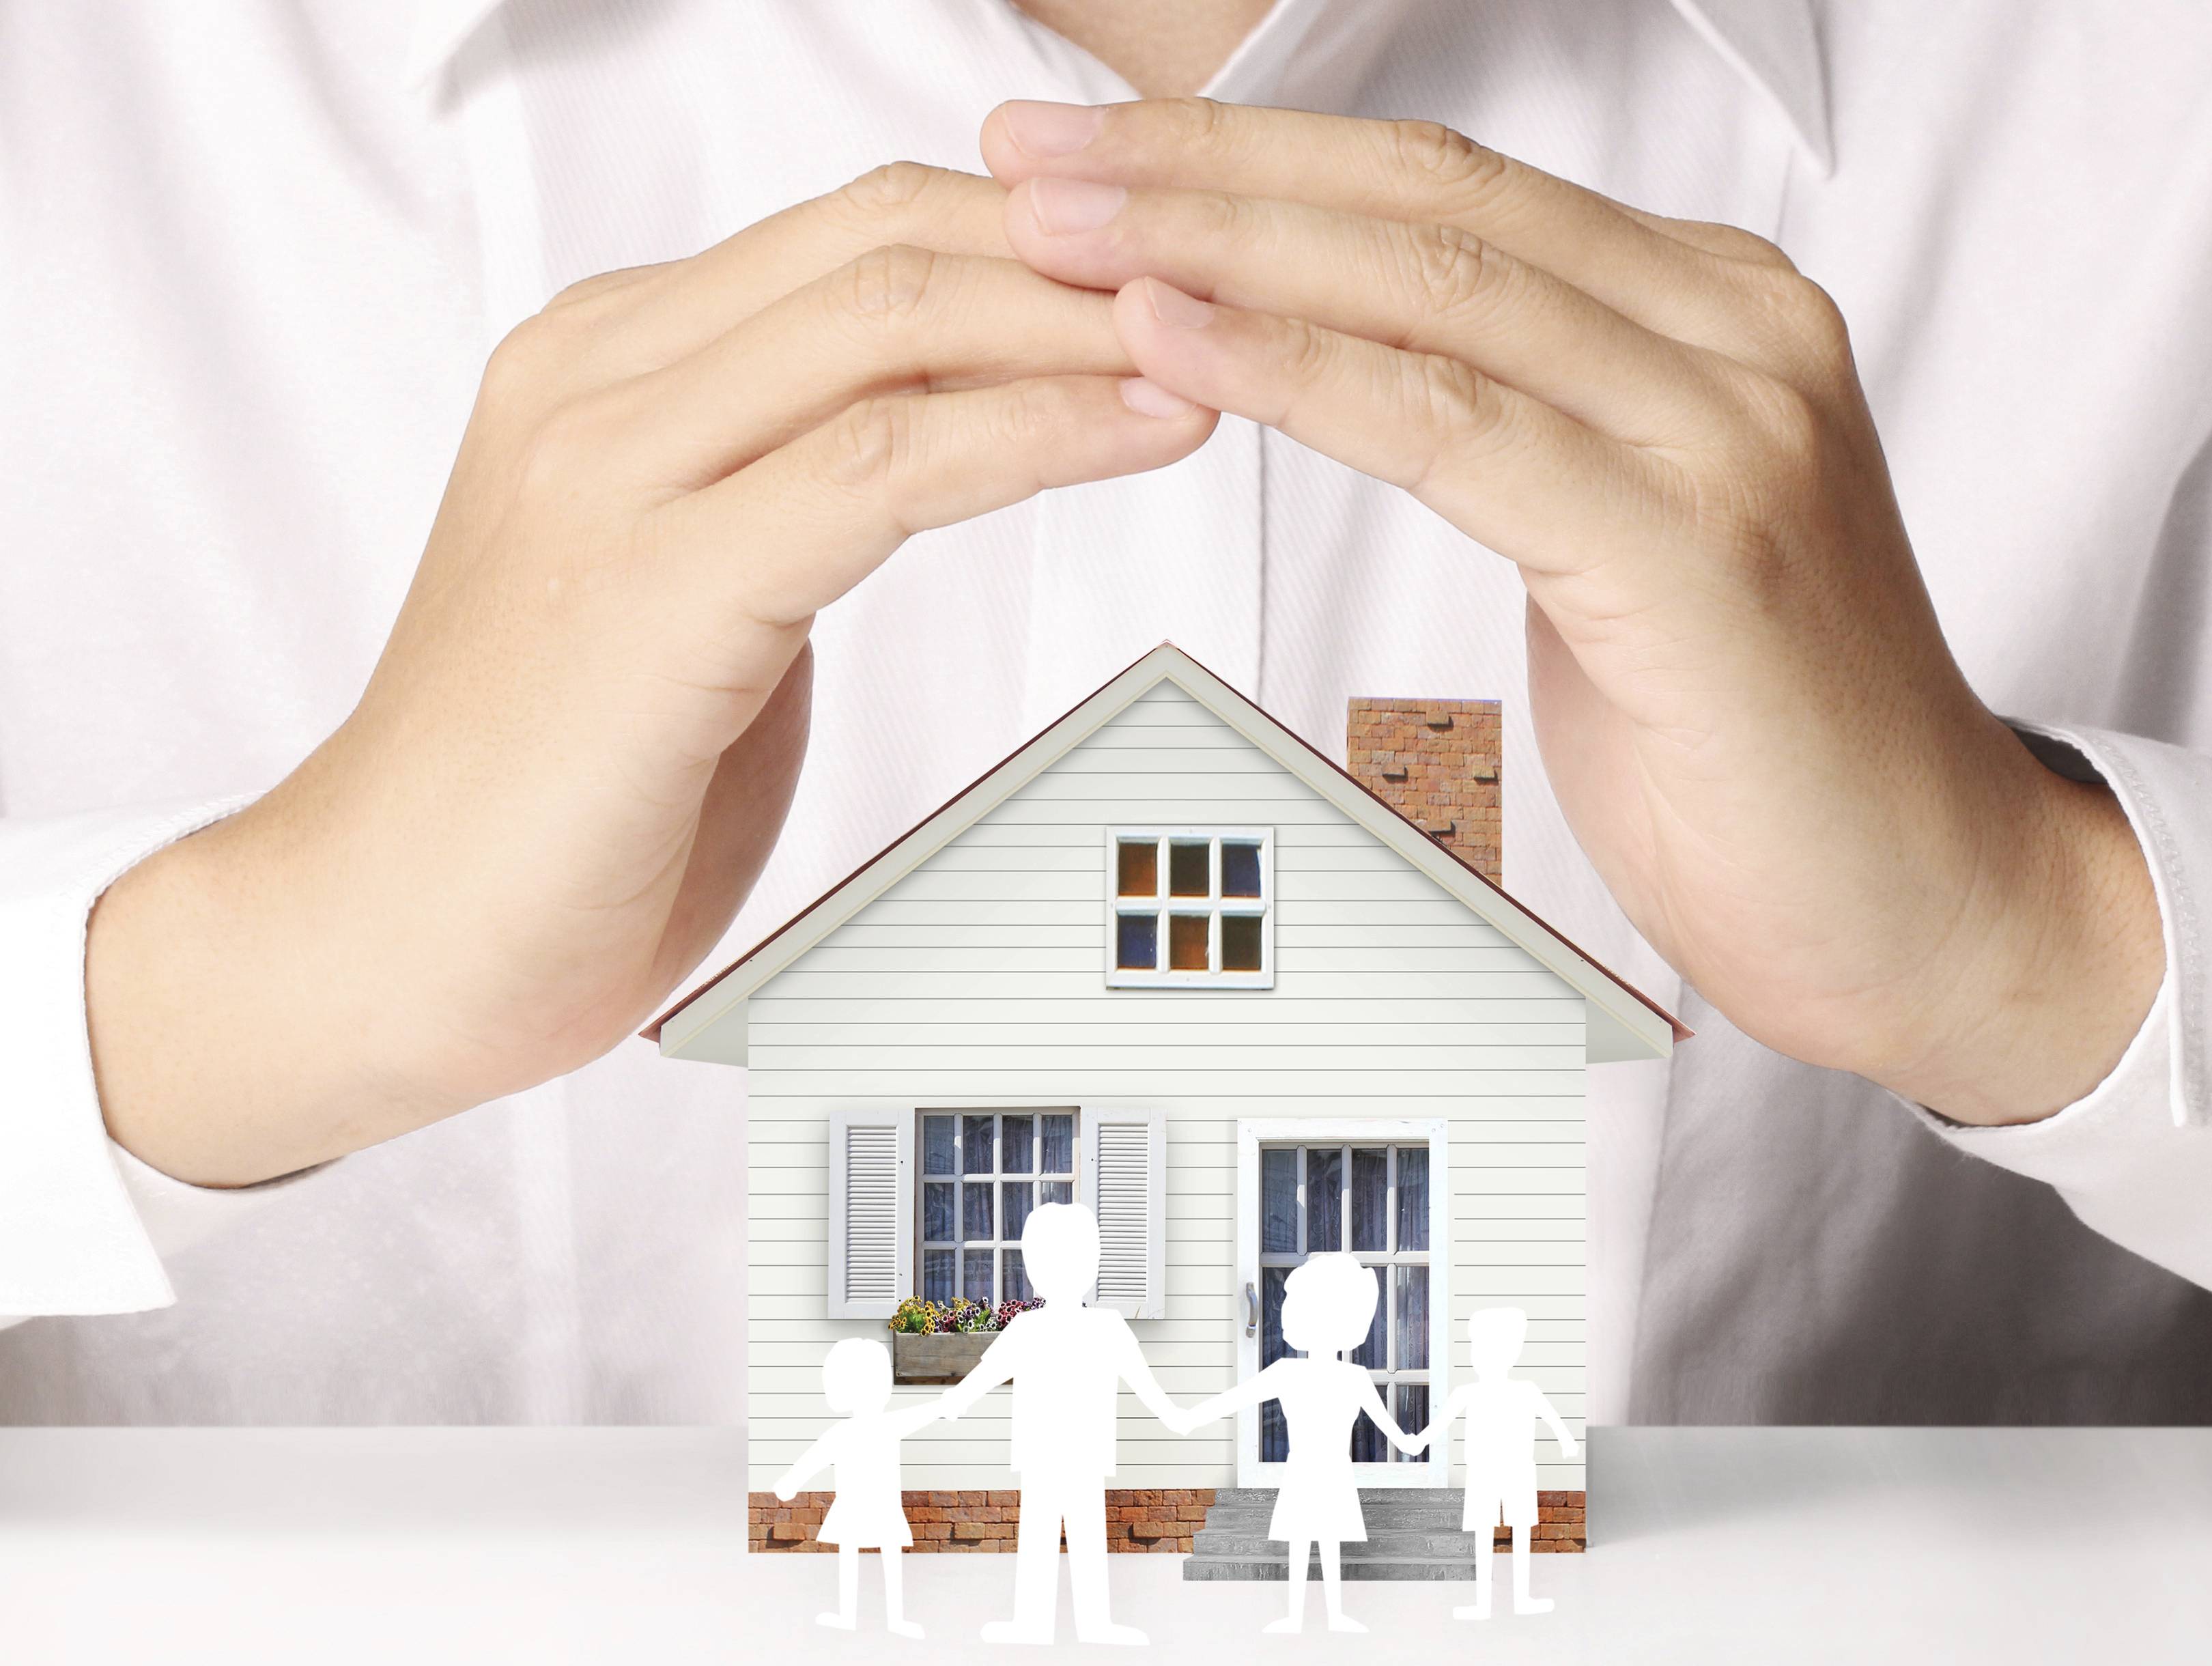 Страхование квартиры — 5 способов как застраховать её недорого